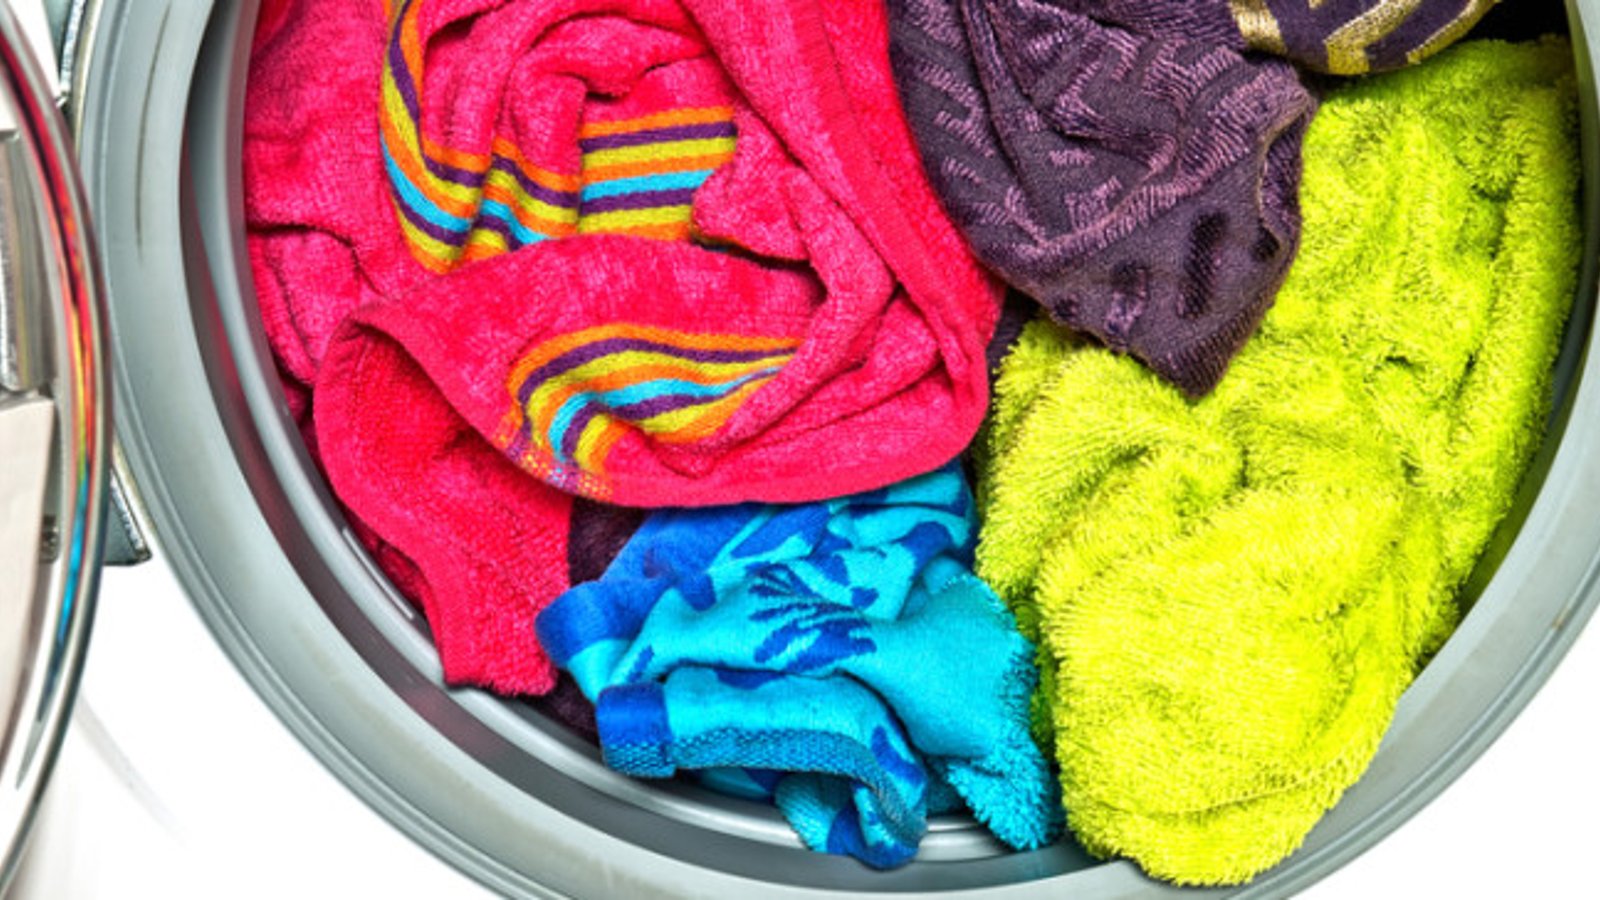 Retirez l'odeur d'humidité de vos serviettes grâce à ce truc efficace et économique